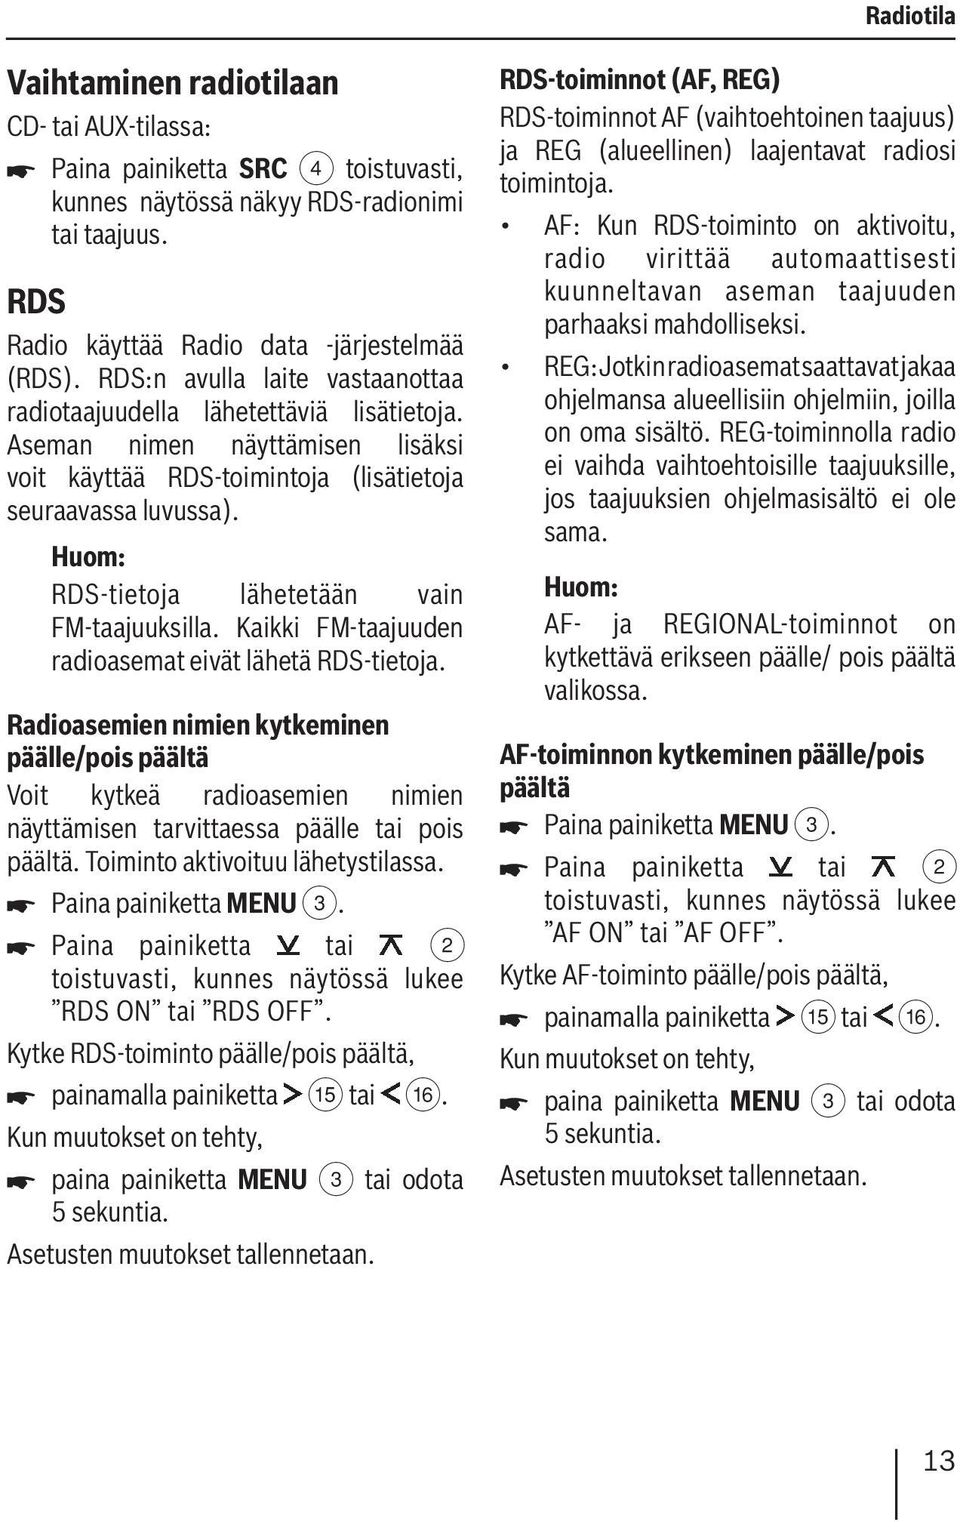 RDS-tietoja lähetetään vain FM-taajuuksilla. Kaikki FM-taajuuden radioasemat eivät lähetä RDS-tietoja.